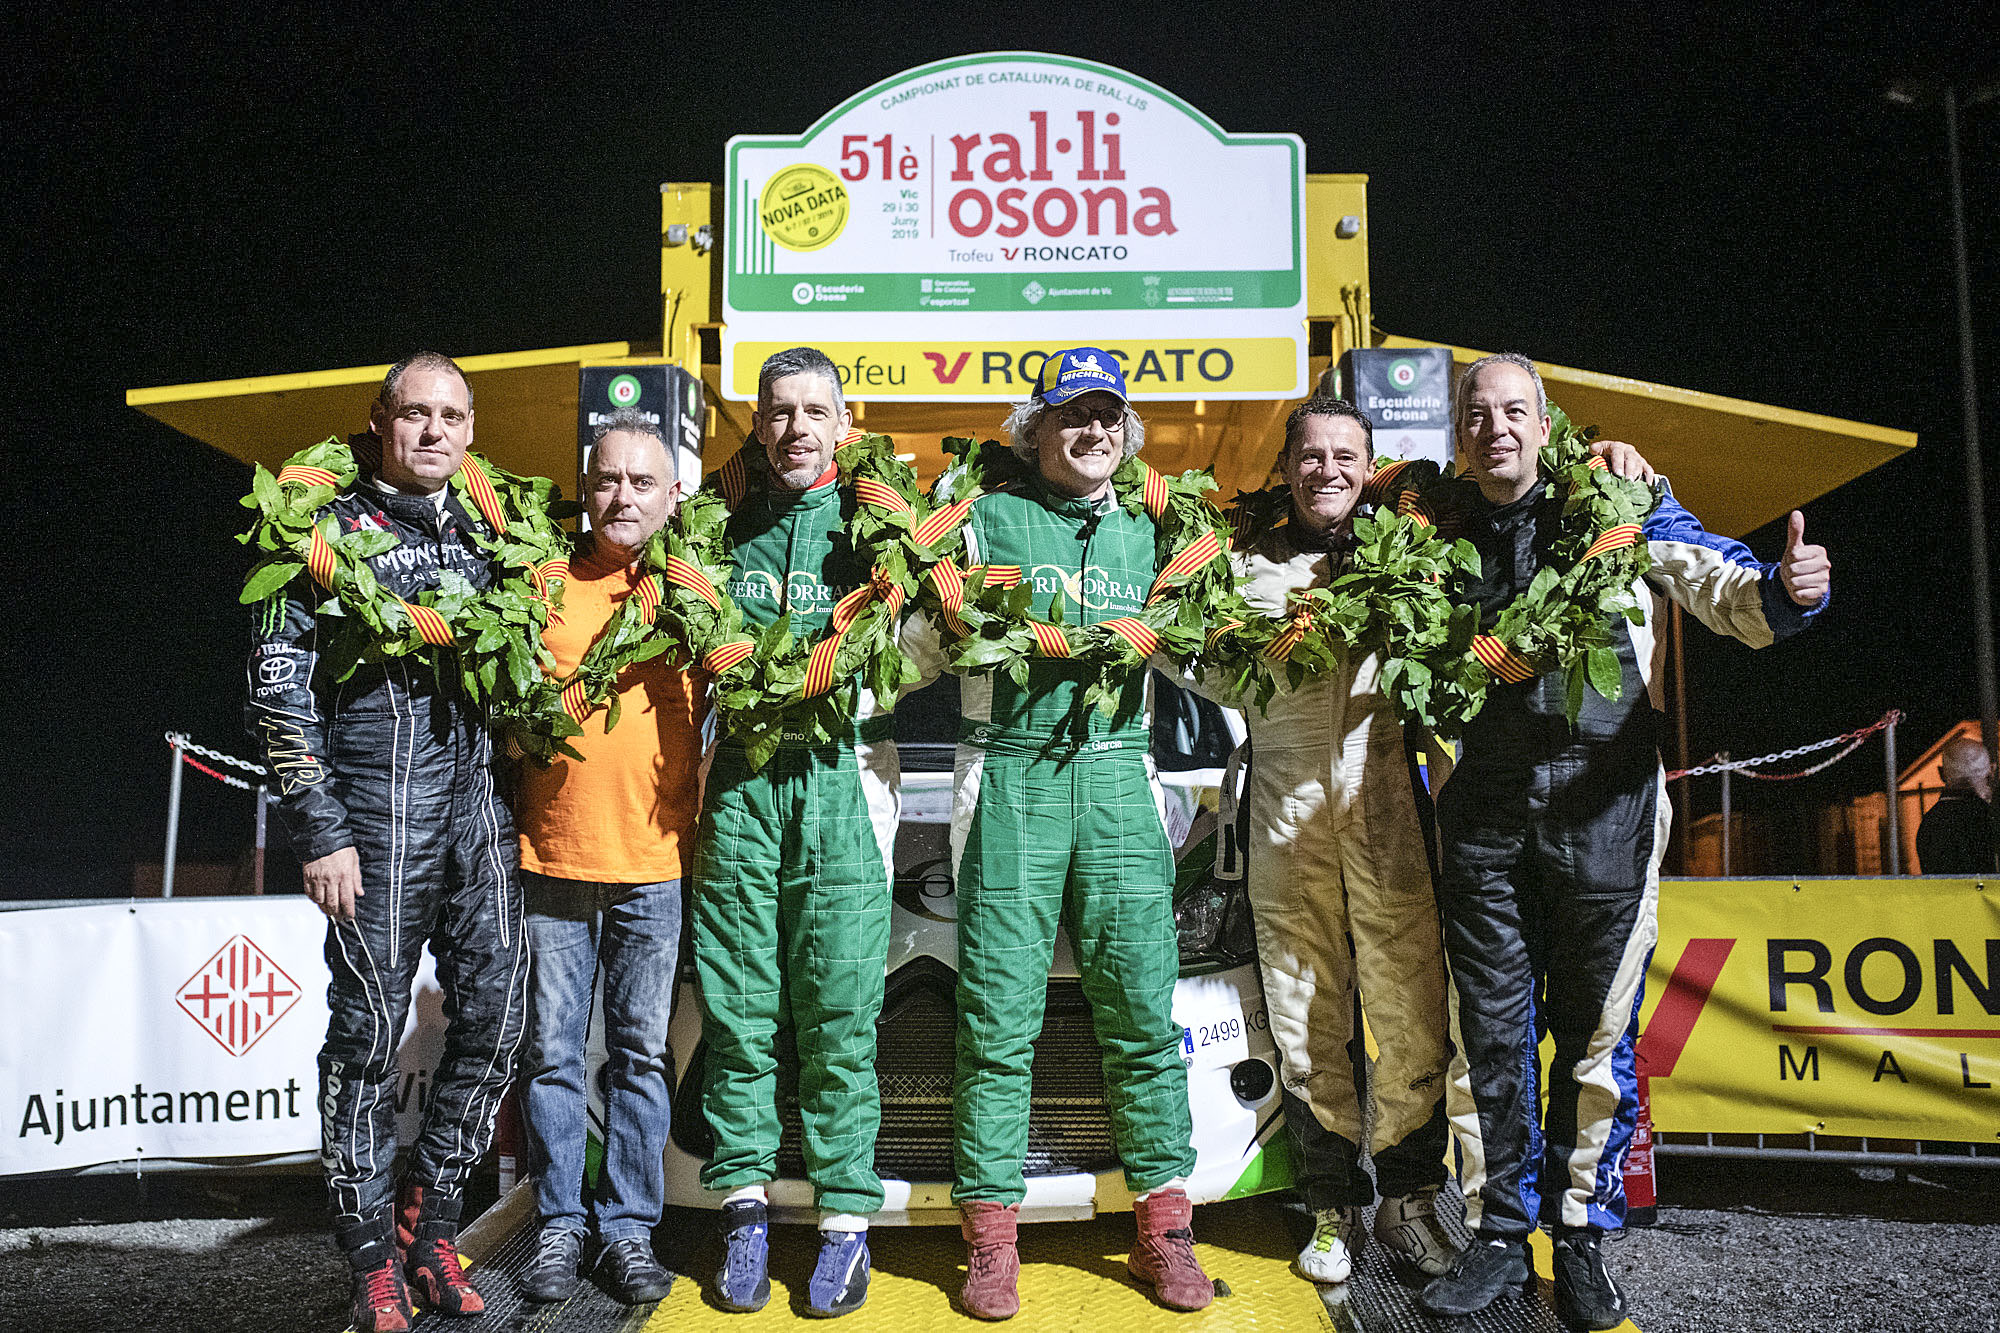 Agustina, Jiménez, Forcada, García, Soler i Ribolleda van ser els pilots i copilots que van pujar al podi de la 51a edició del Ral·li Osona